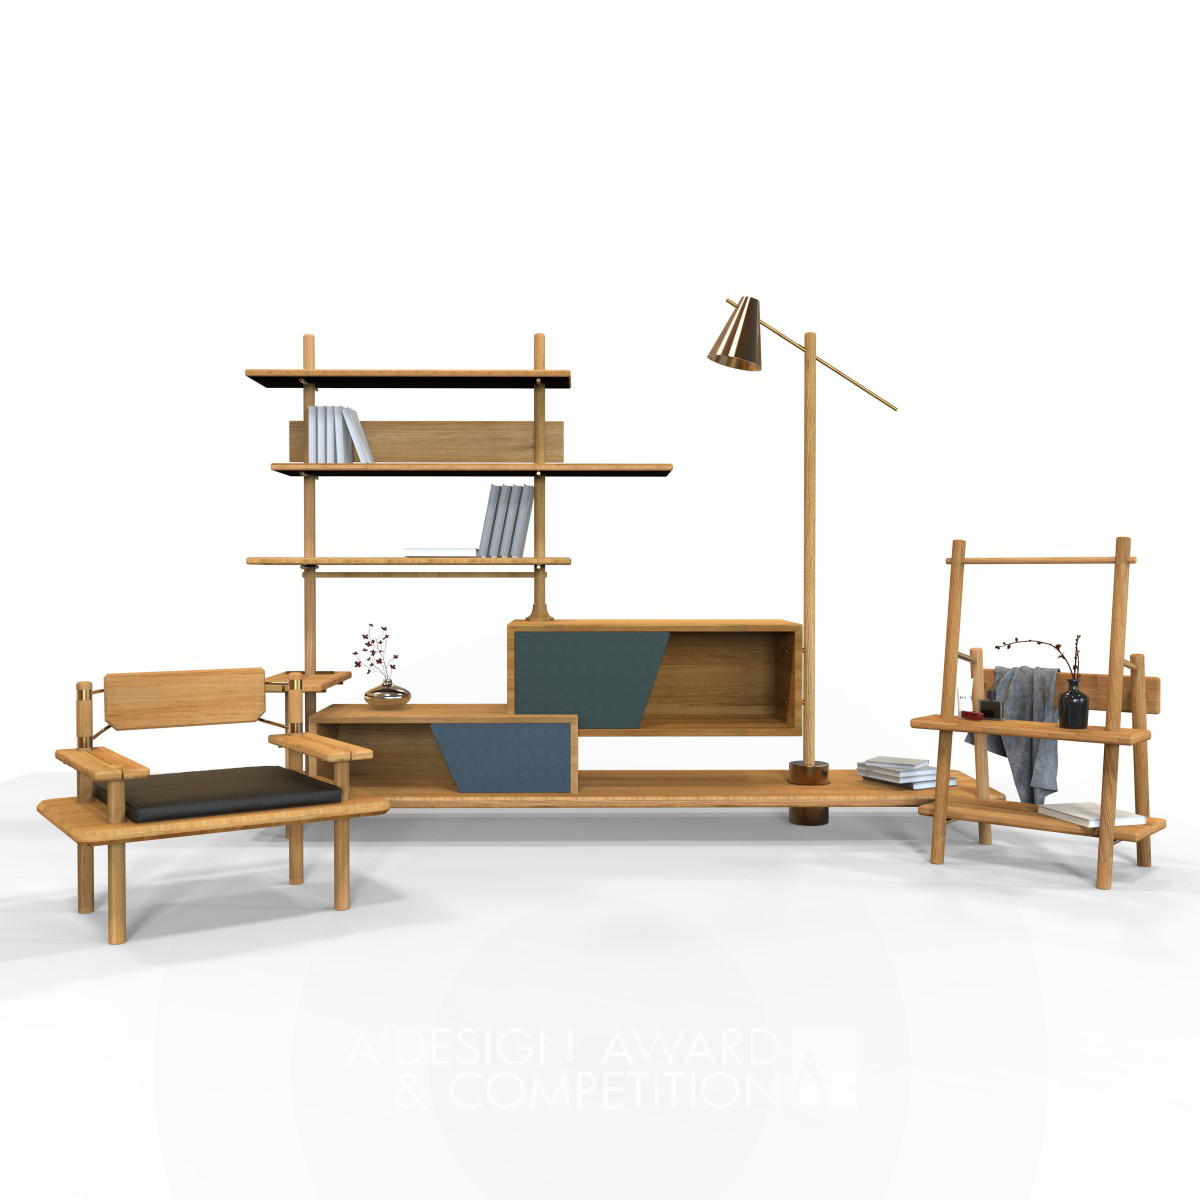 Vertical Ock Furnitures Furniture Collection by Wei Jingye, Sun Kezhao and Wei Xinmiao Iron Furniture Design Award Winner 2019 